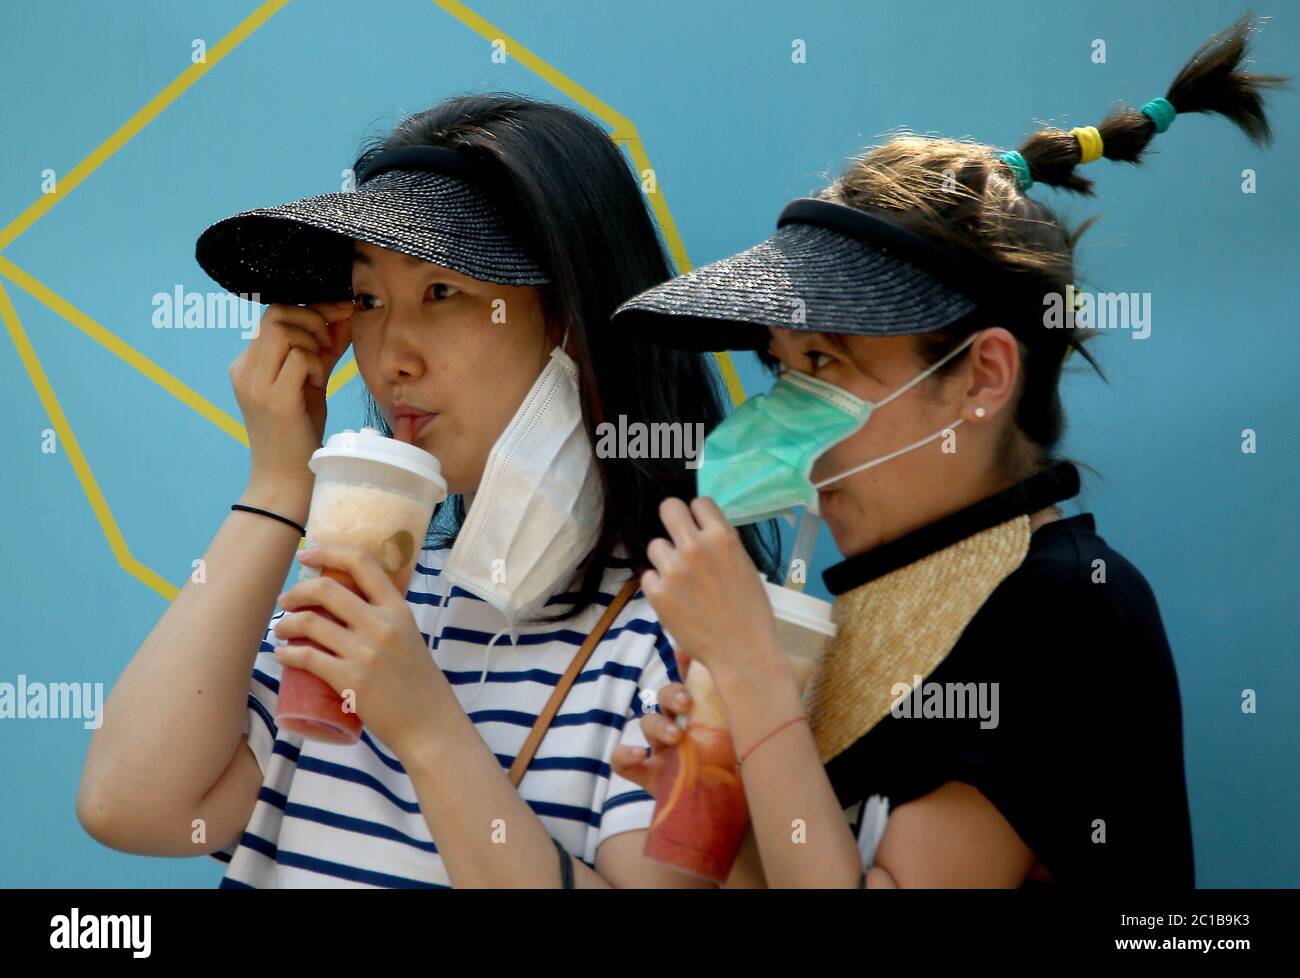 Pechino, Cina. 15 giugno 2020. Le donne cinesi indossano maschere protettive mentre camminano attraverso il centro di Pechino lunedì 15 giugno 2020. Tutti i luoghi di sport e intrattenimento al coperto sono stati chiusi nella capitale cinese, mentre il governo ha corso per contenere un'epidemia di coronavirus legata a un mercato alimentare all'ingrosso, con alcune parti della città sotto completa chiusura. Foto di Stephen Shaver/UPI Credit: UPI/Alamy Live News Foto Stock